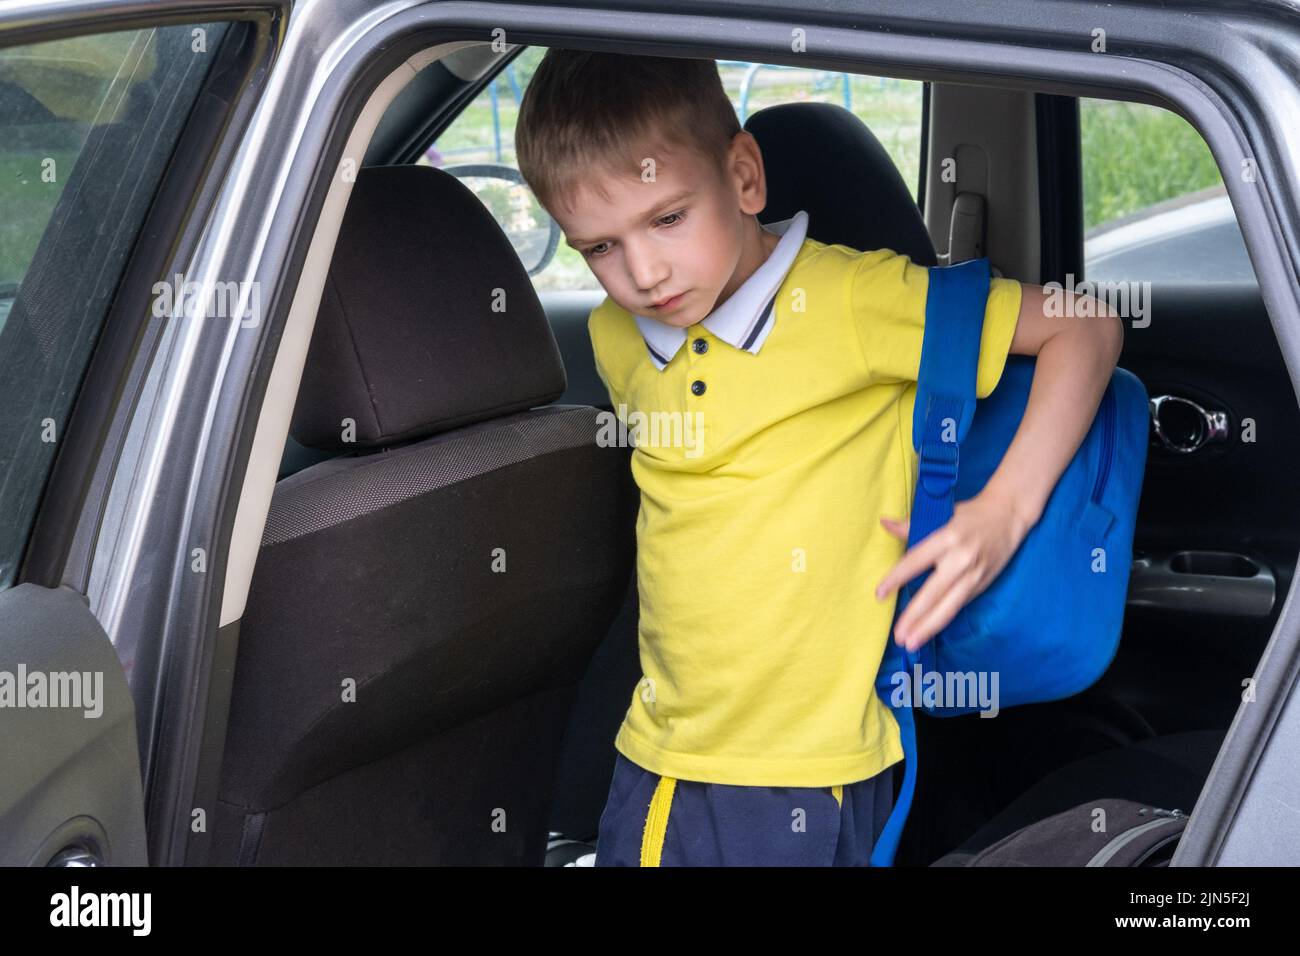 Retrato de un niño sonriente con una bolsa de escuela saliendo del coche. Recoger a un estudiante después de la escuela. El niño entra en el coche. Foto de stock